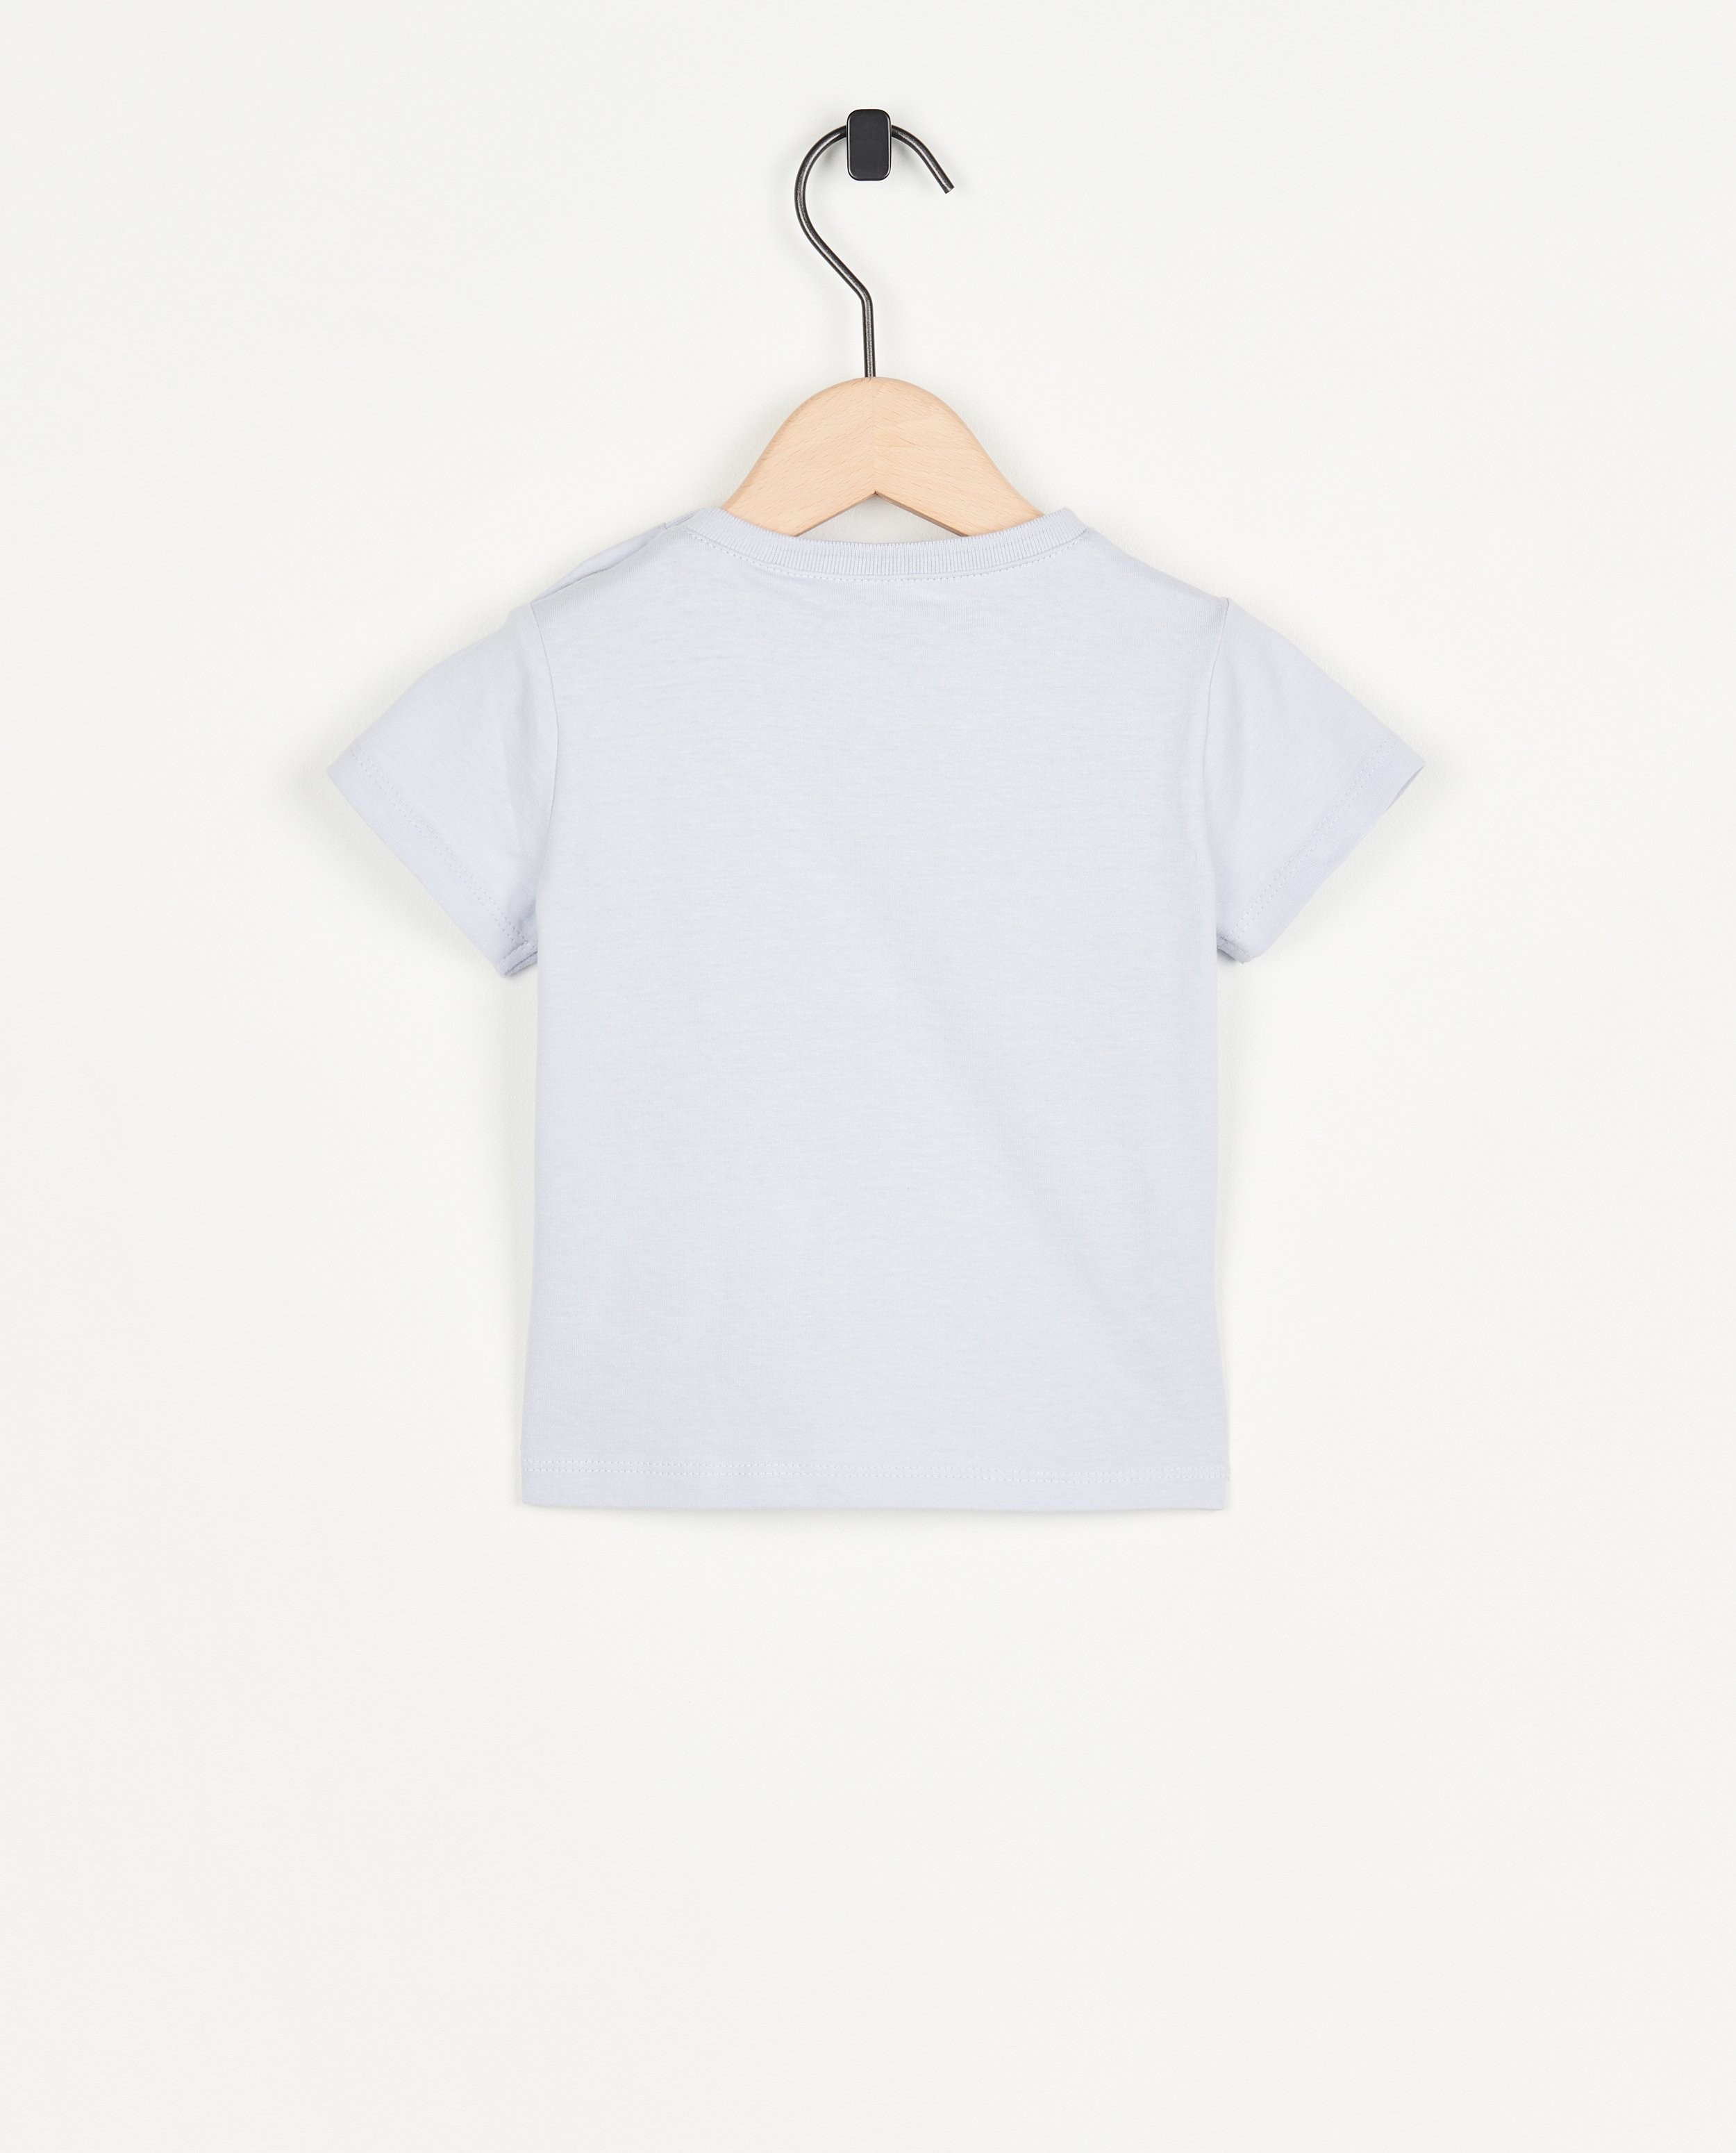 T-shirts - Lichtblauw T-shirt met reliëf, baby